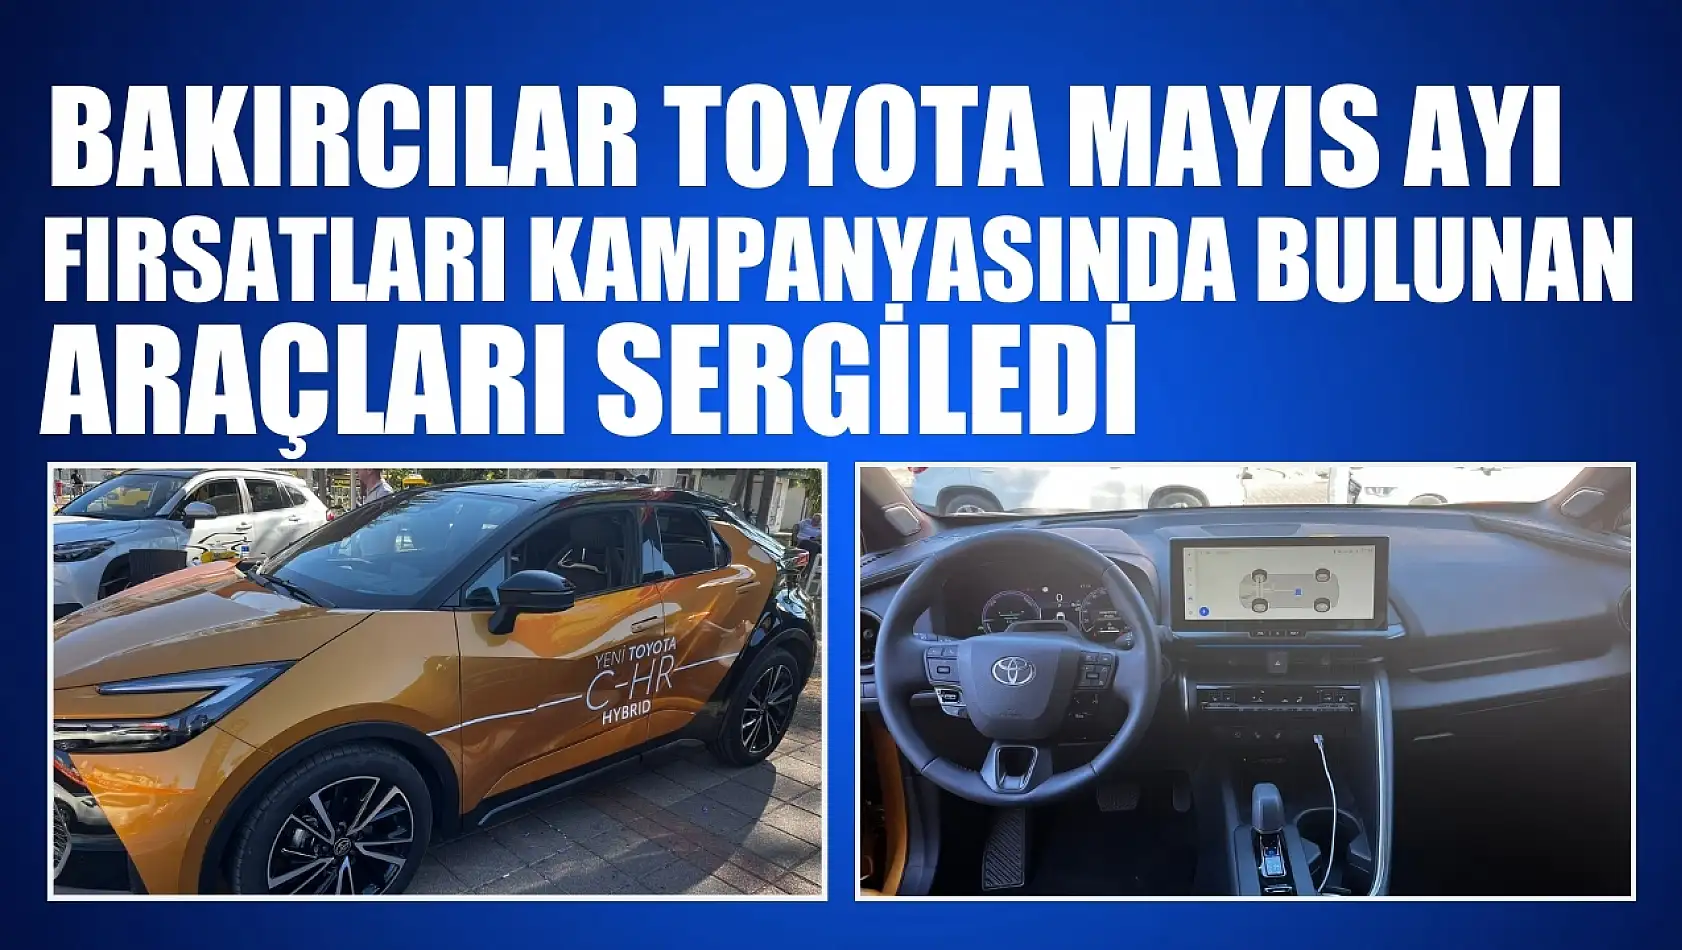 Bakırcılar Toyota Mayıs ayı fırsatları kampanyasında bulunan araçları sergiledi 